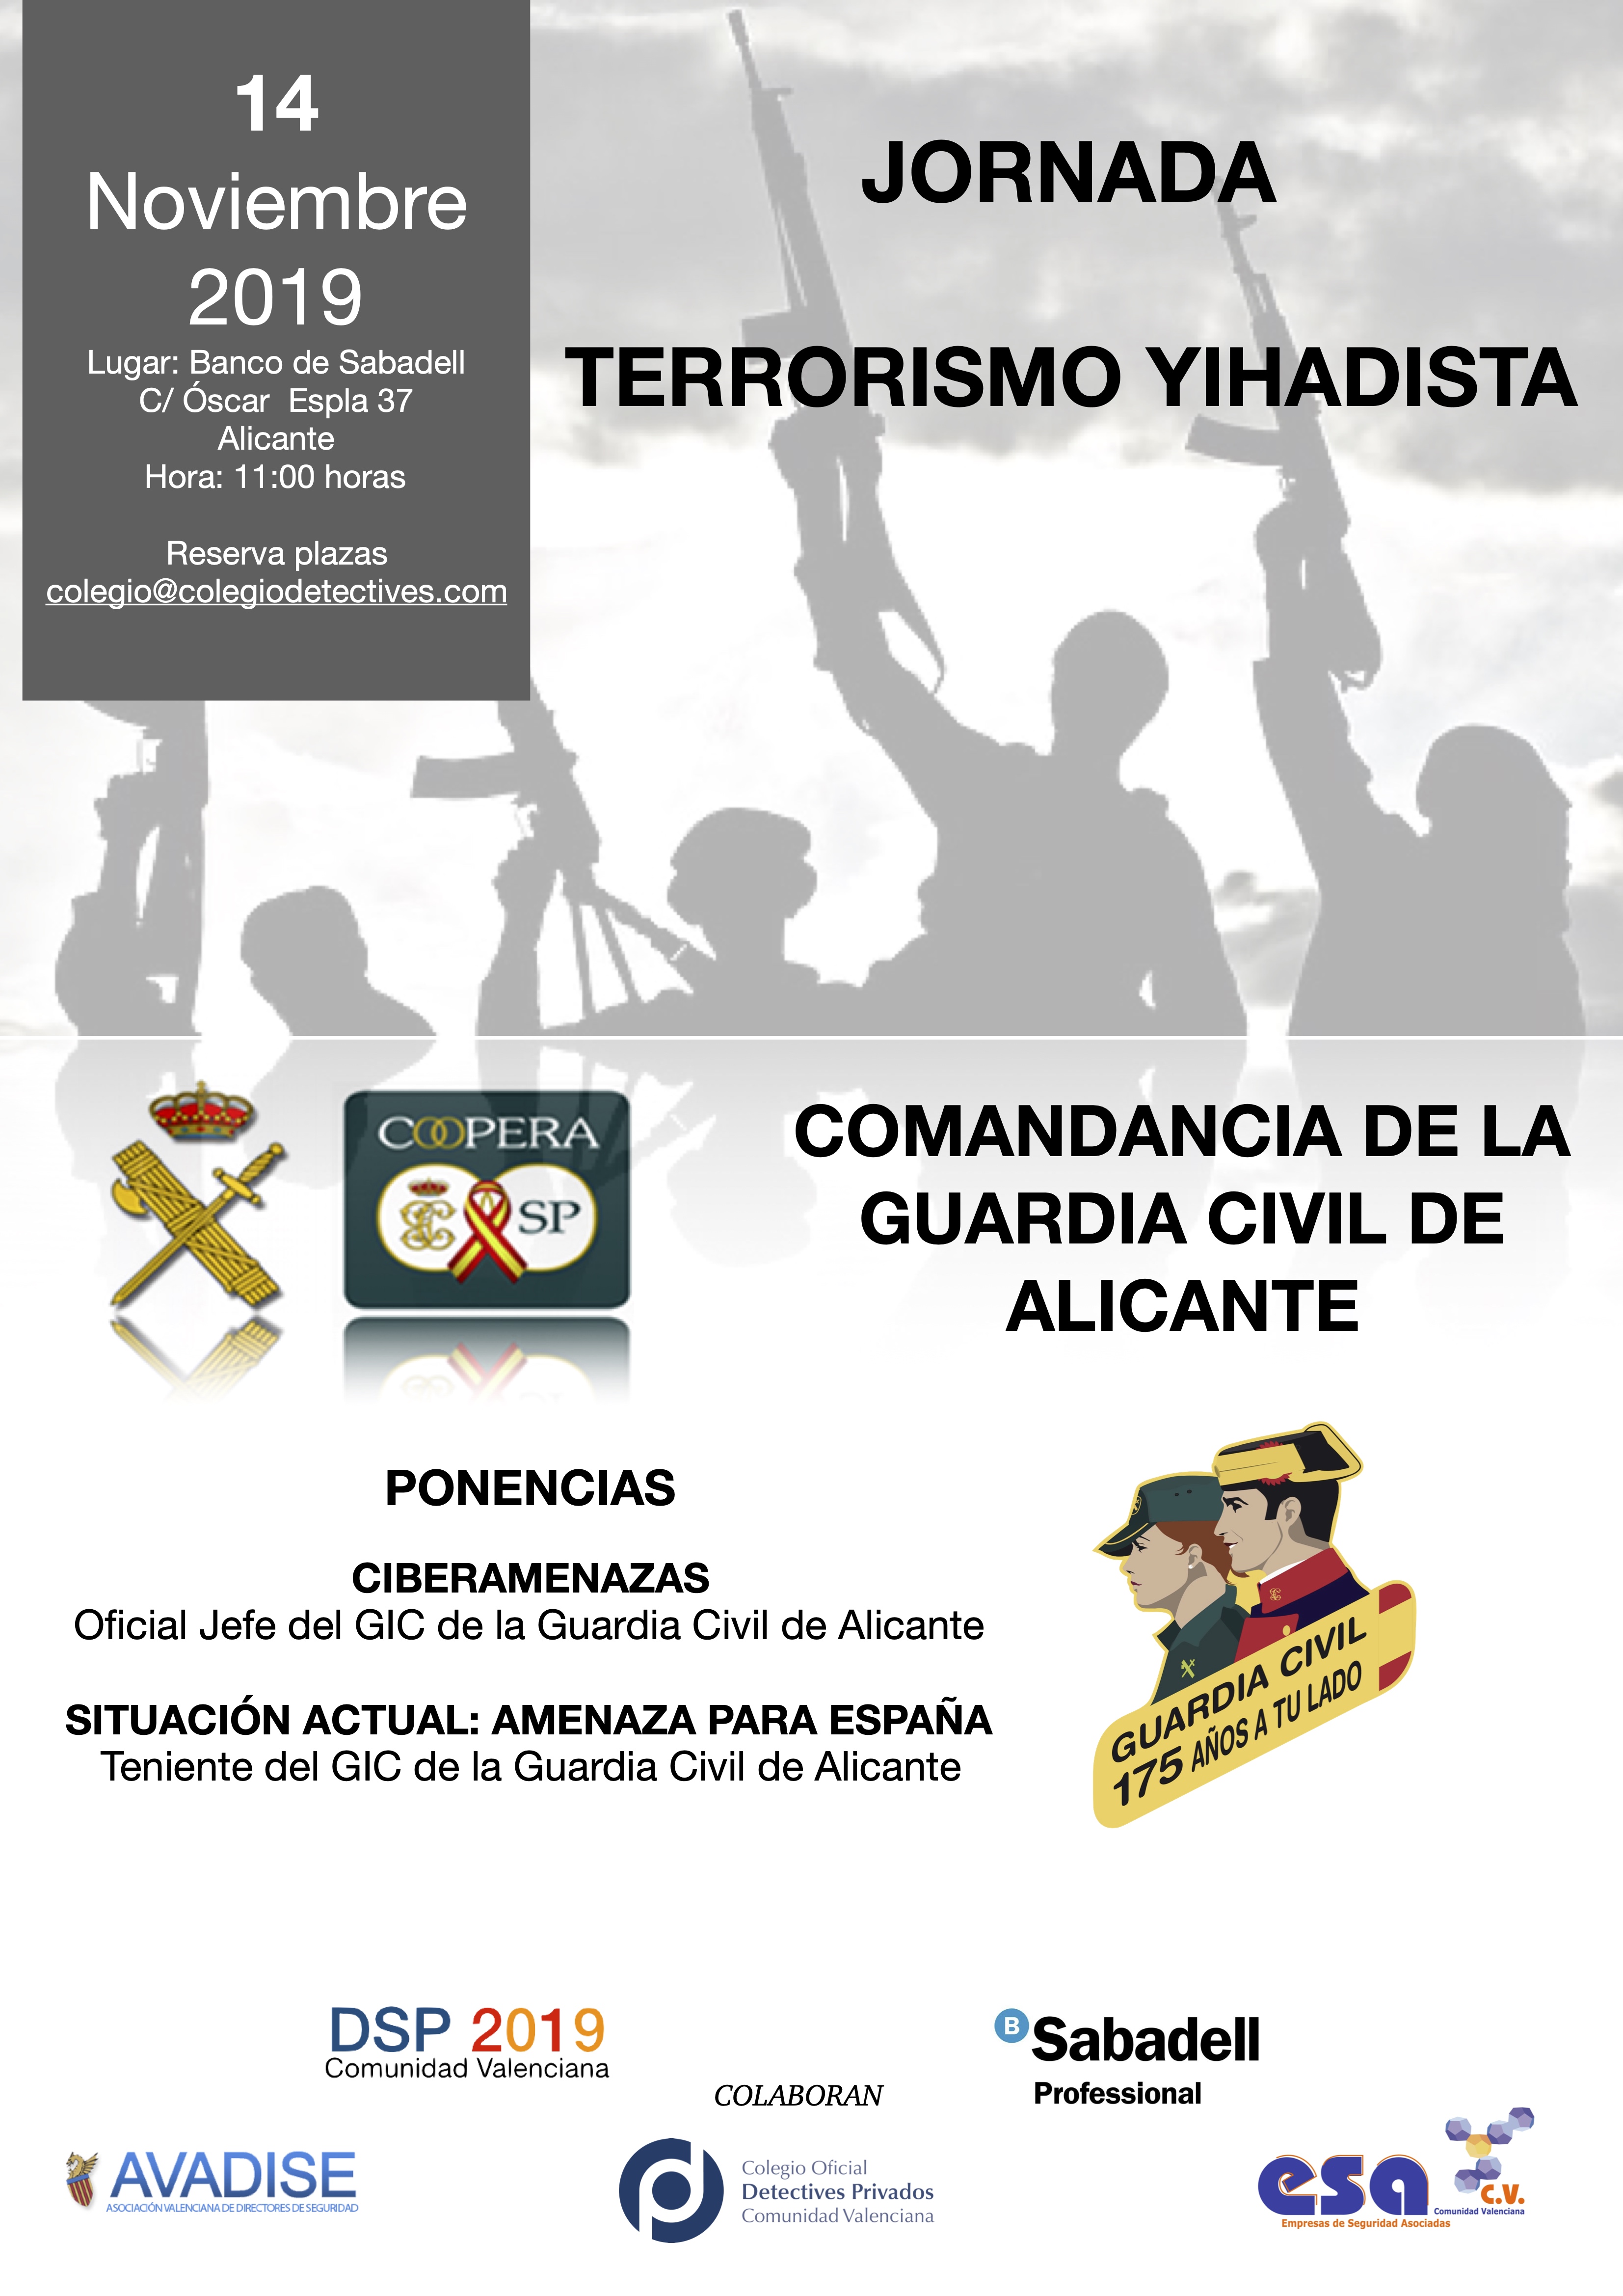 Jornada en Alicante sobre Terrorismo Yihadista y Ciberamenazas